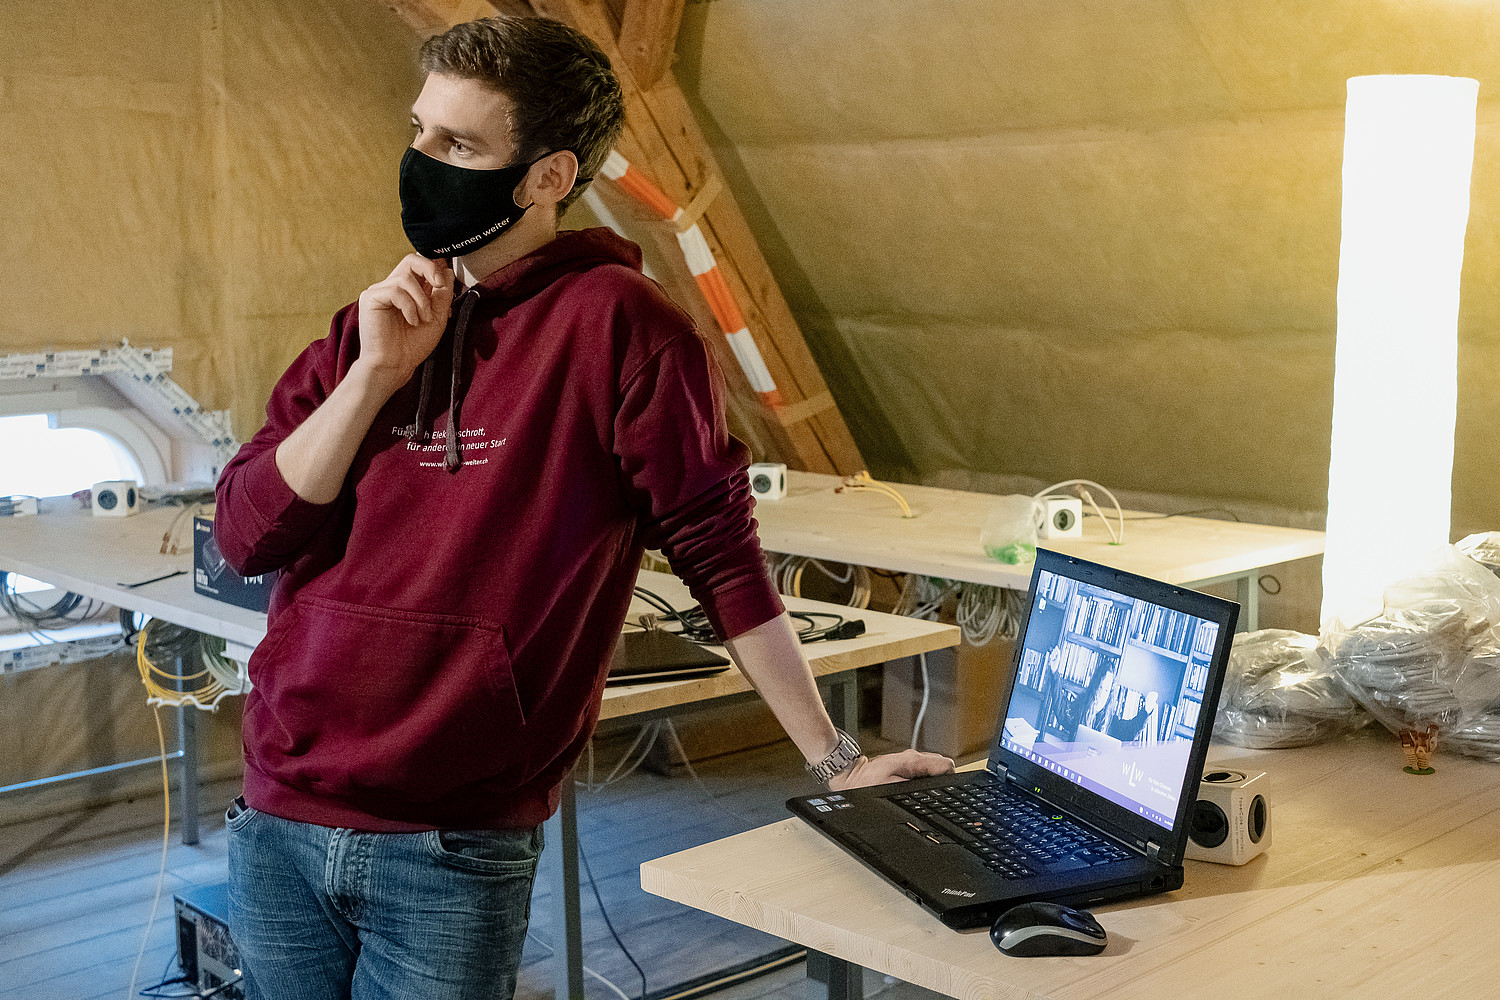 Der 27-jährige Tobias Schär ist Gründer des Vereins «Wir lernen weiter». Seine Idee: gebrauchte Laptops sammeln, sie neu aufrüsten und an Bedürftige weitergeben. Damit die Digitalisierung niemanden aussen vor lässt.